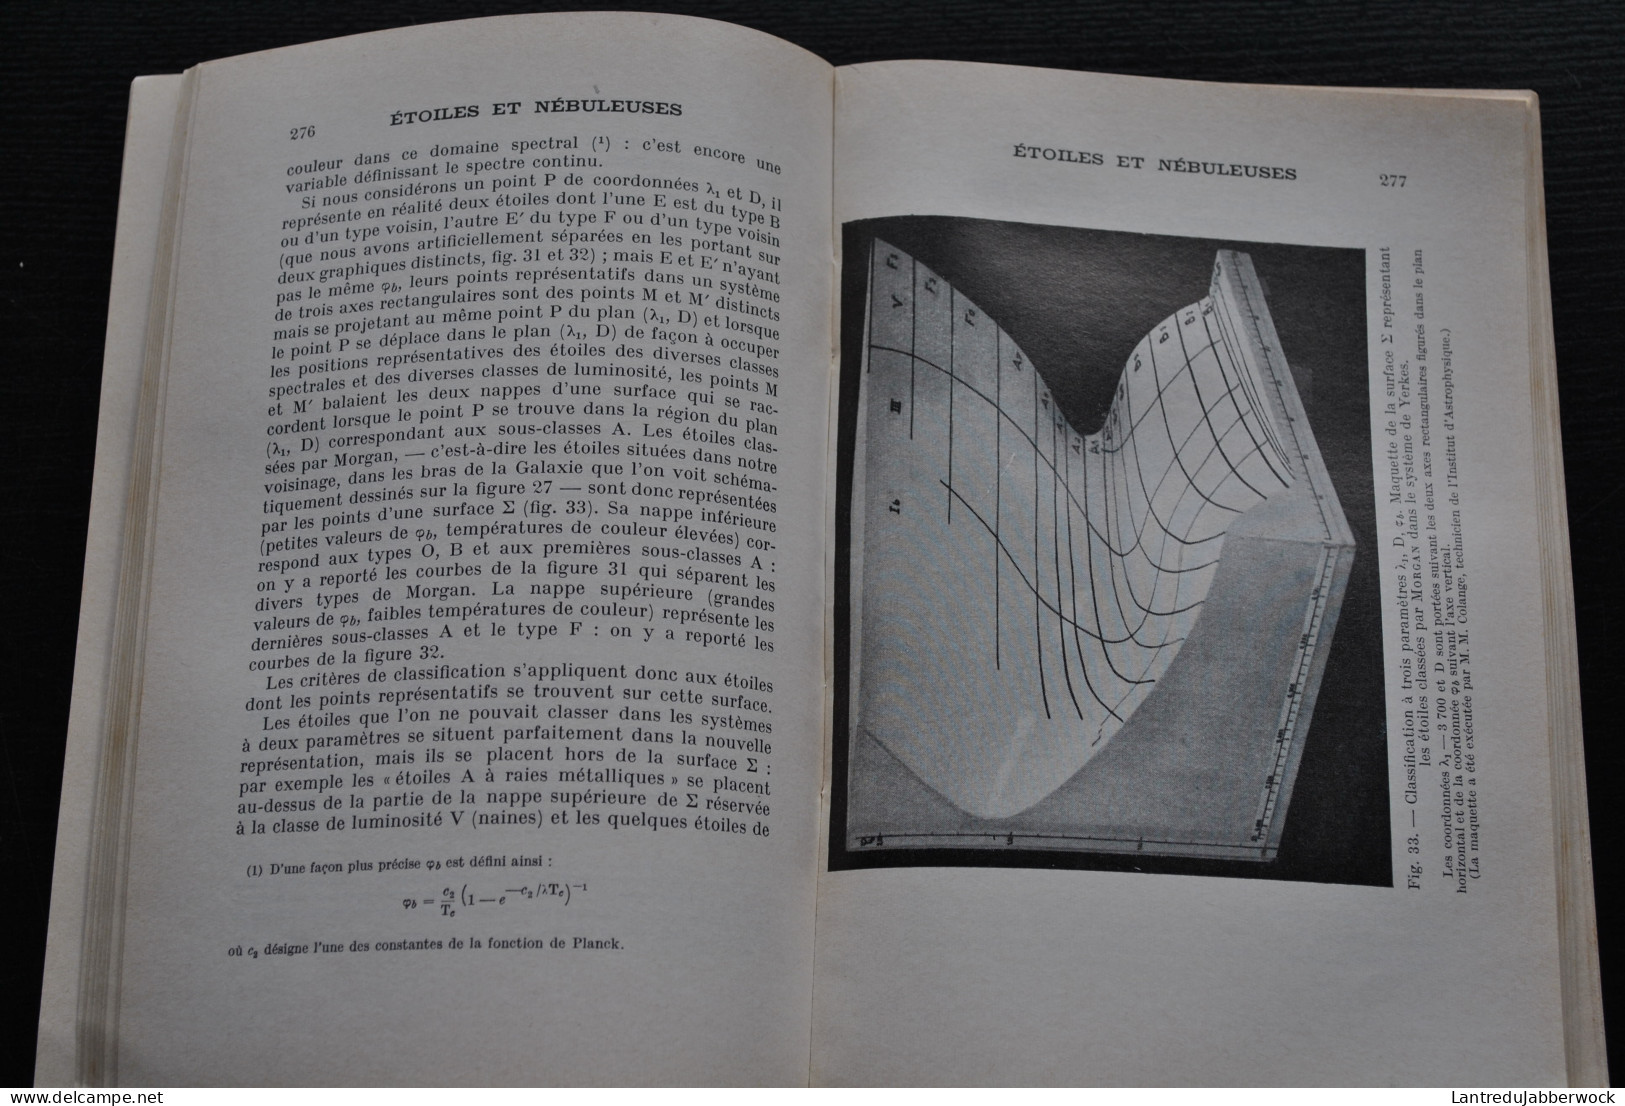 Annuaire Astronomique Et Météorologique Camille FLAMMARION 1962 Observatoire De Juvisy Astronomie Téléscope Calendrier - Sterrenkunde